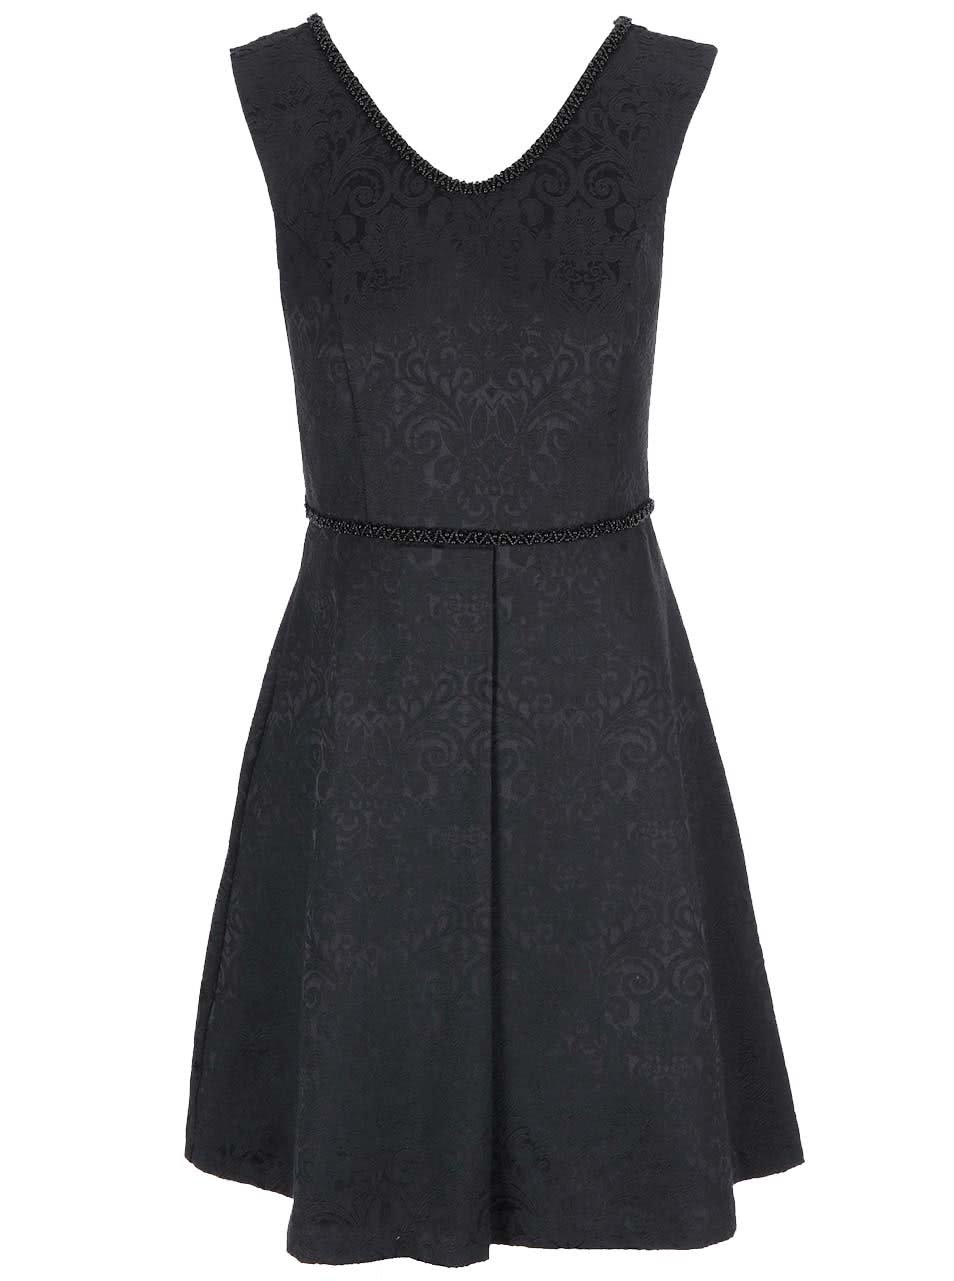 Černé vzorované šaty s širokou sukní Fever London